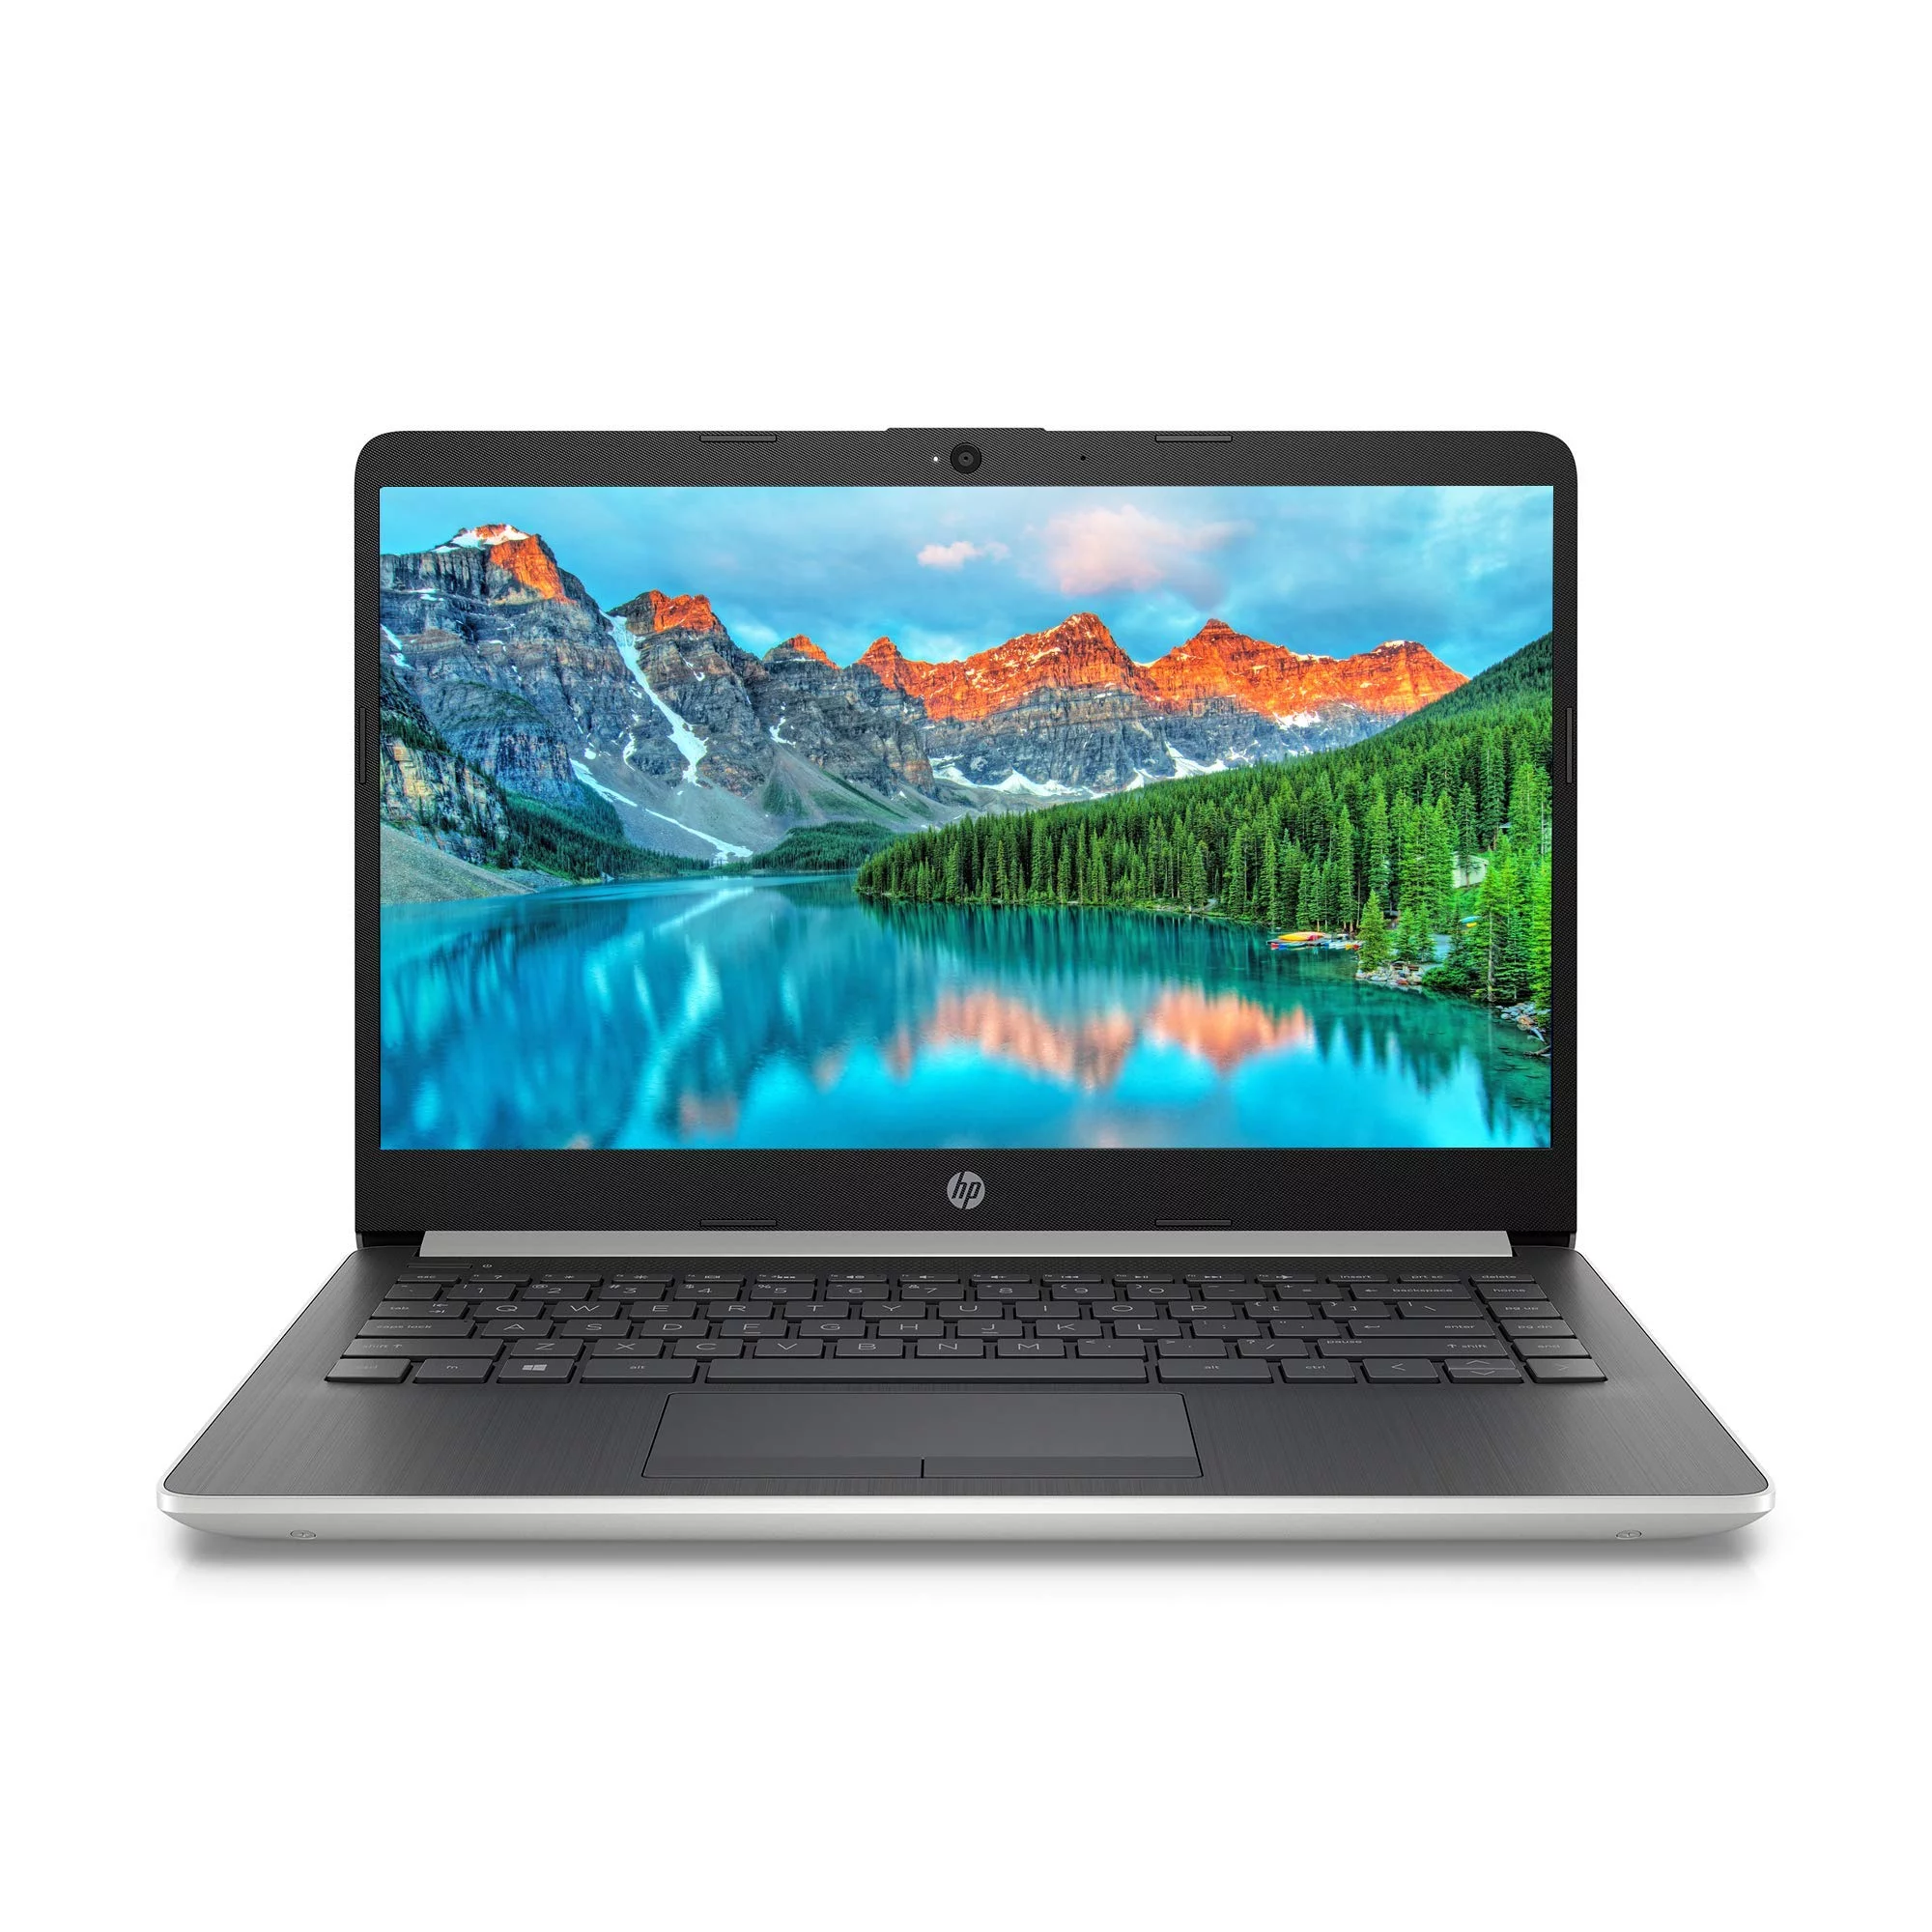 Best Laptop under $400